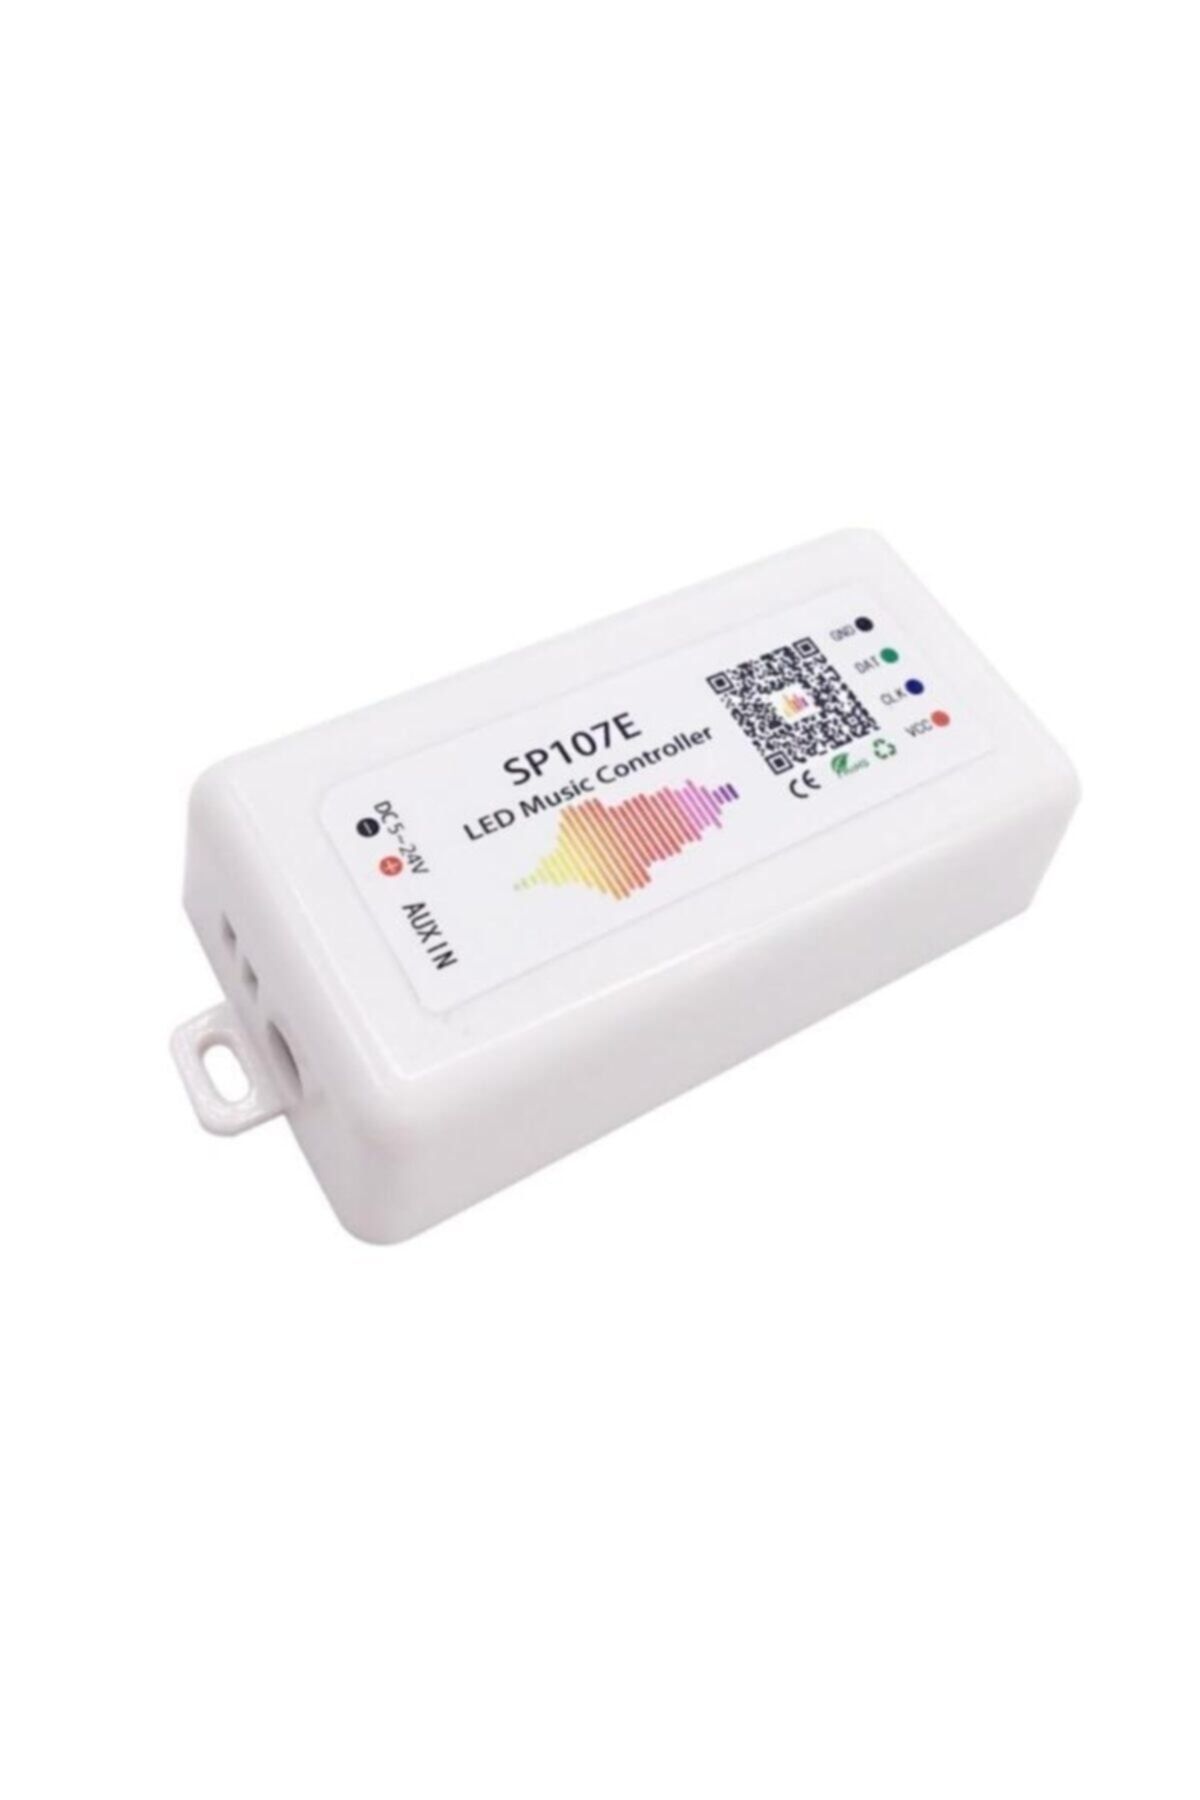 Fortor Sp107e Ws2812b Adreslenebilir Piksel Şerit Led Bluetooth Bağlantılı Kontrol Cihazı 5-24 Volt